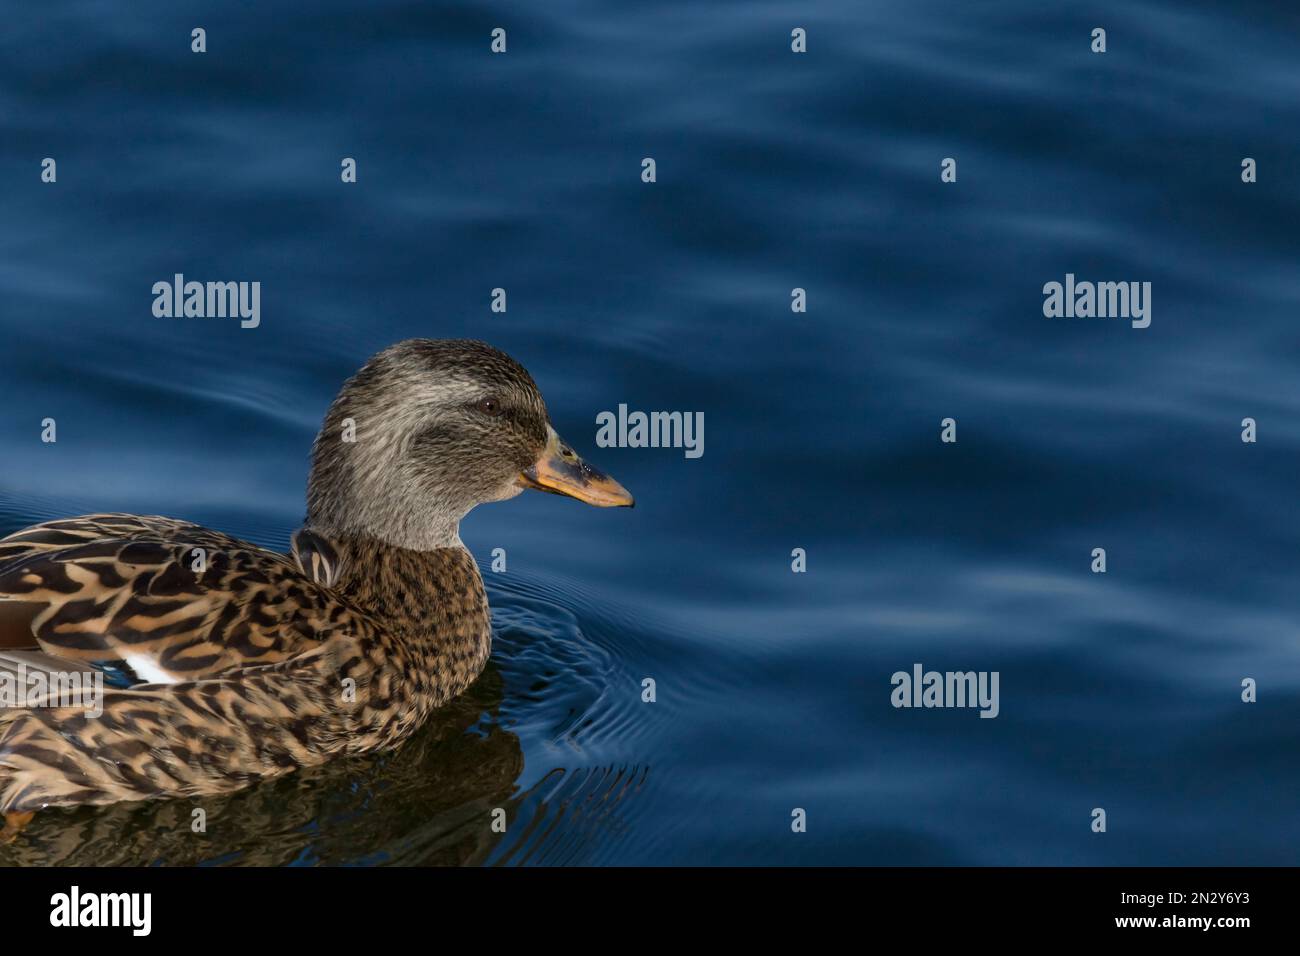 Nahaufnahme einer jungen Ente, die in einem blauen Wasser schwimmt Stockfoto